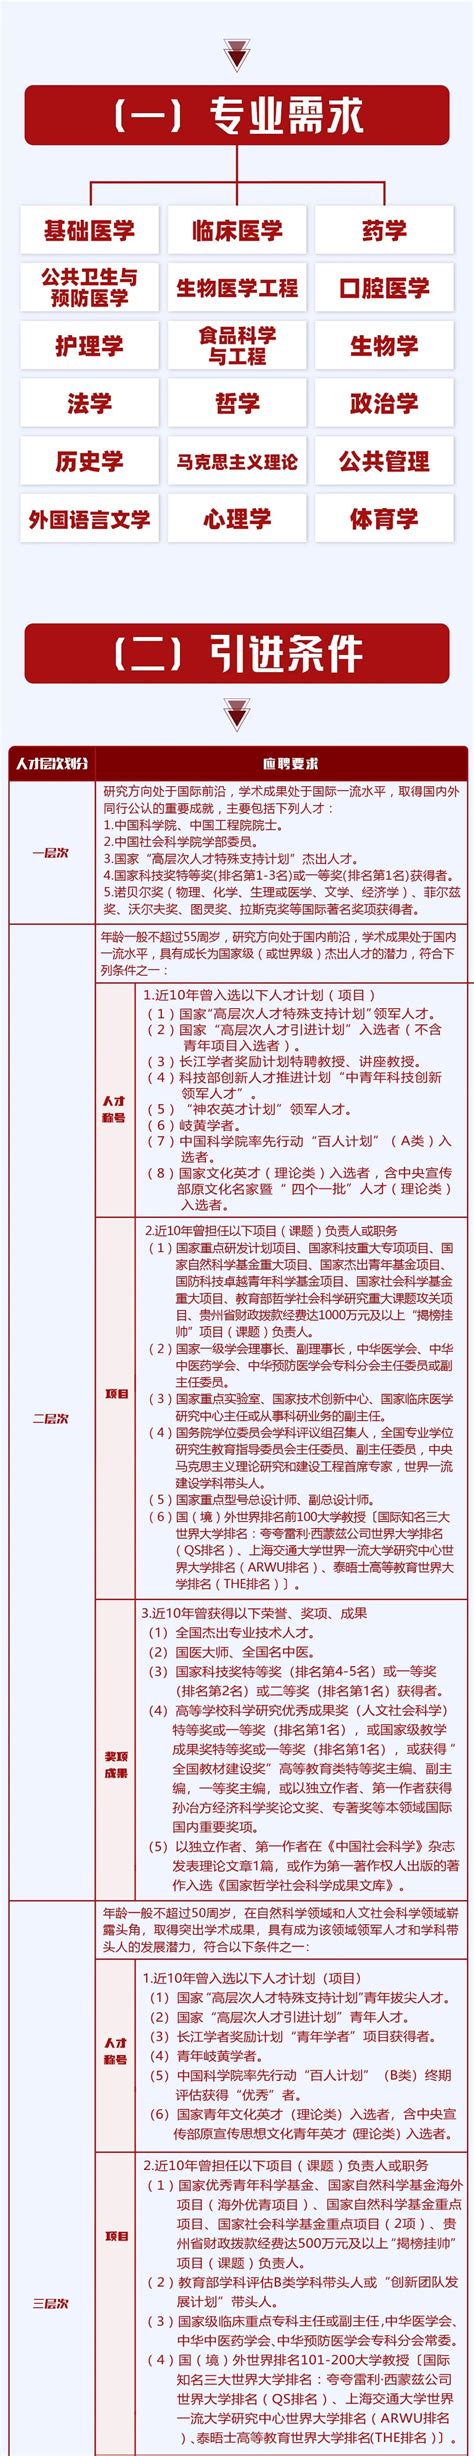 贵州医科大学2023年诚聘海内外优秀人才 - [www.gzdysx.com] - 贵州163网